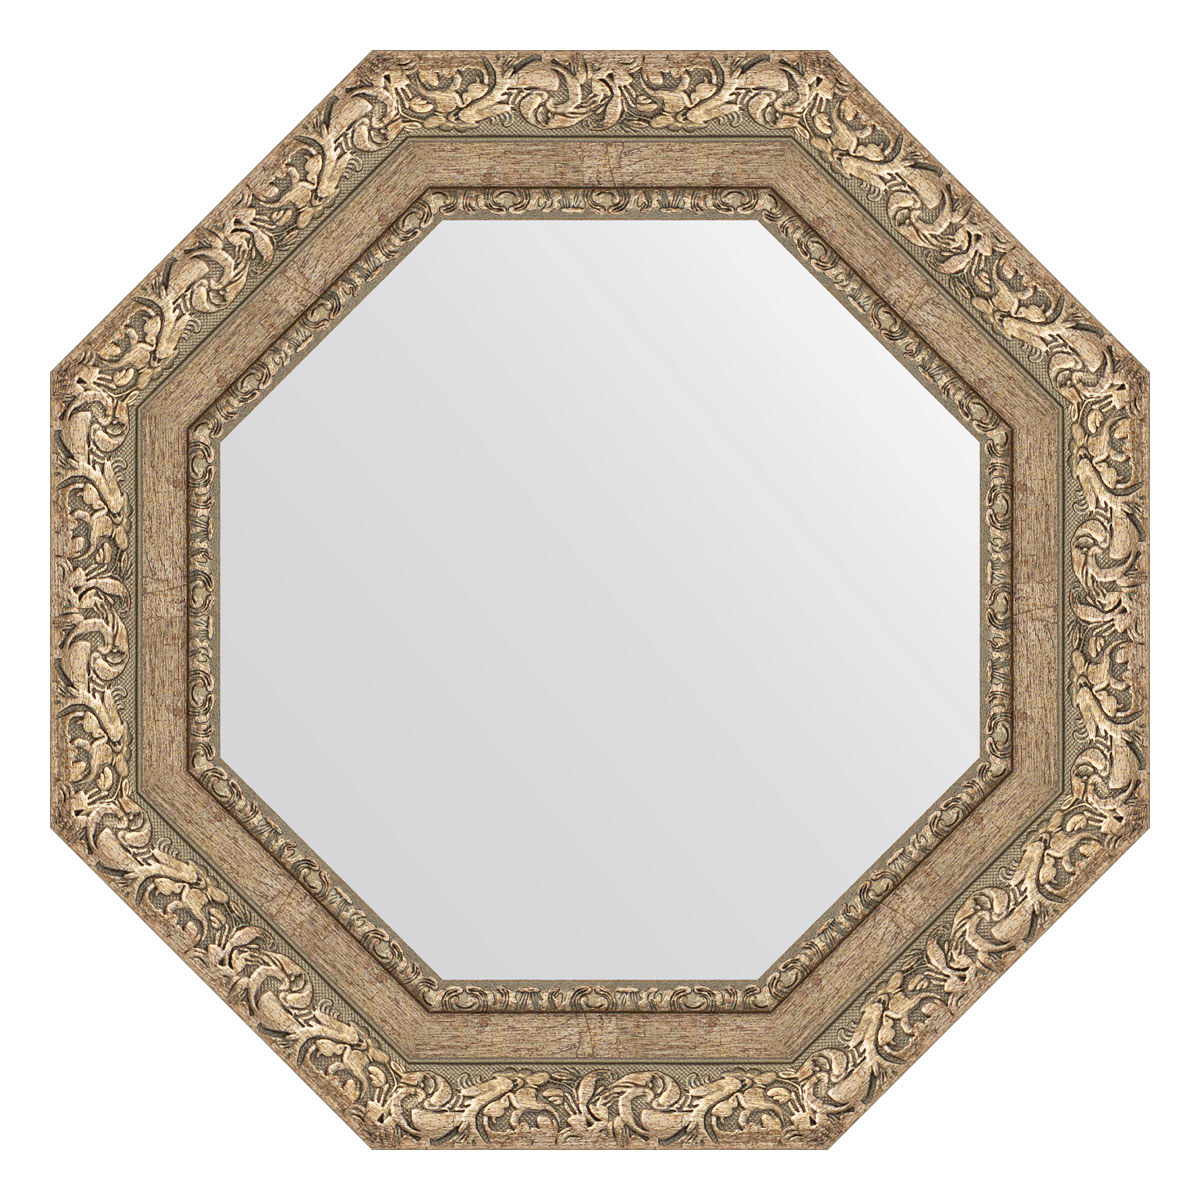 90312589 Зеркало в багетной раме виньетка античное серебро 85 мм 55.4х55.4 см BY 3775 OCTAGON STLM-0179563 EVOFORM